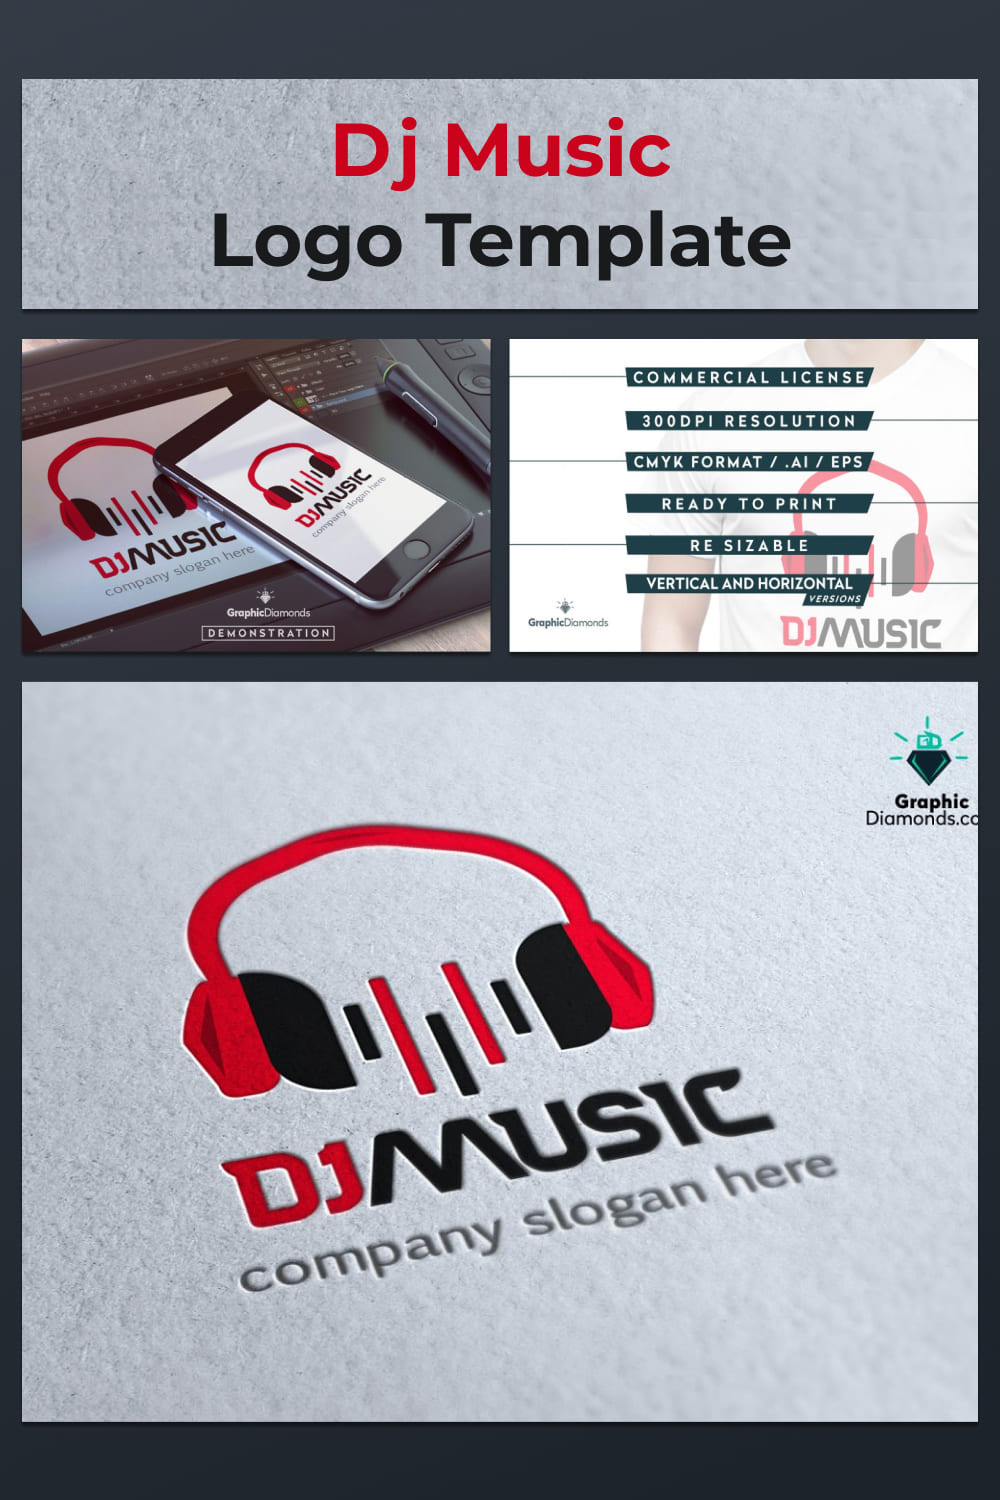 dj music logo template for music sphere.